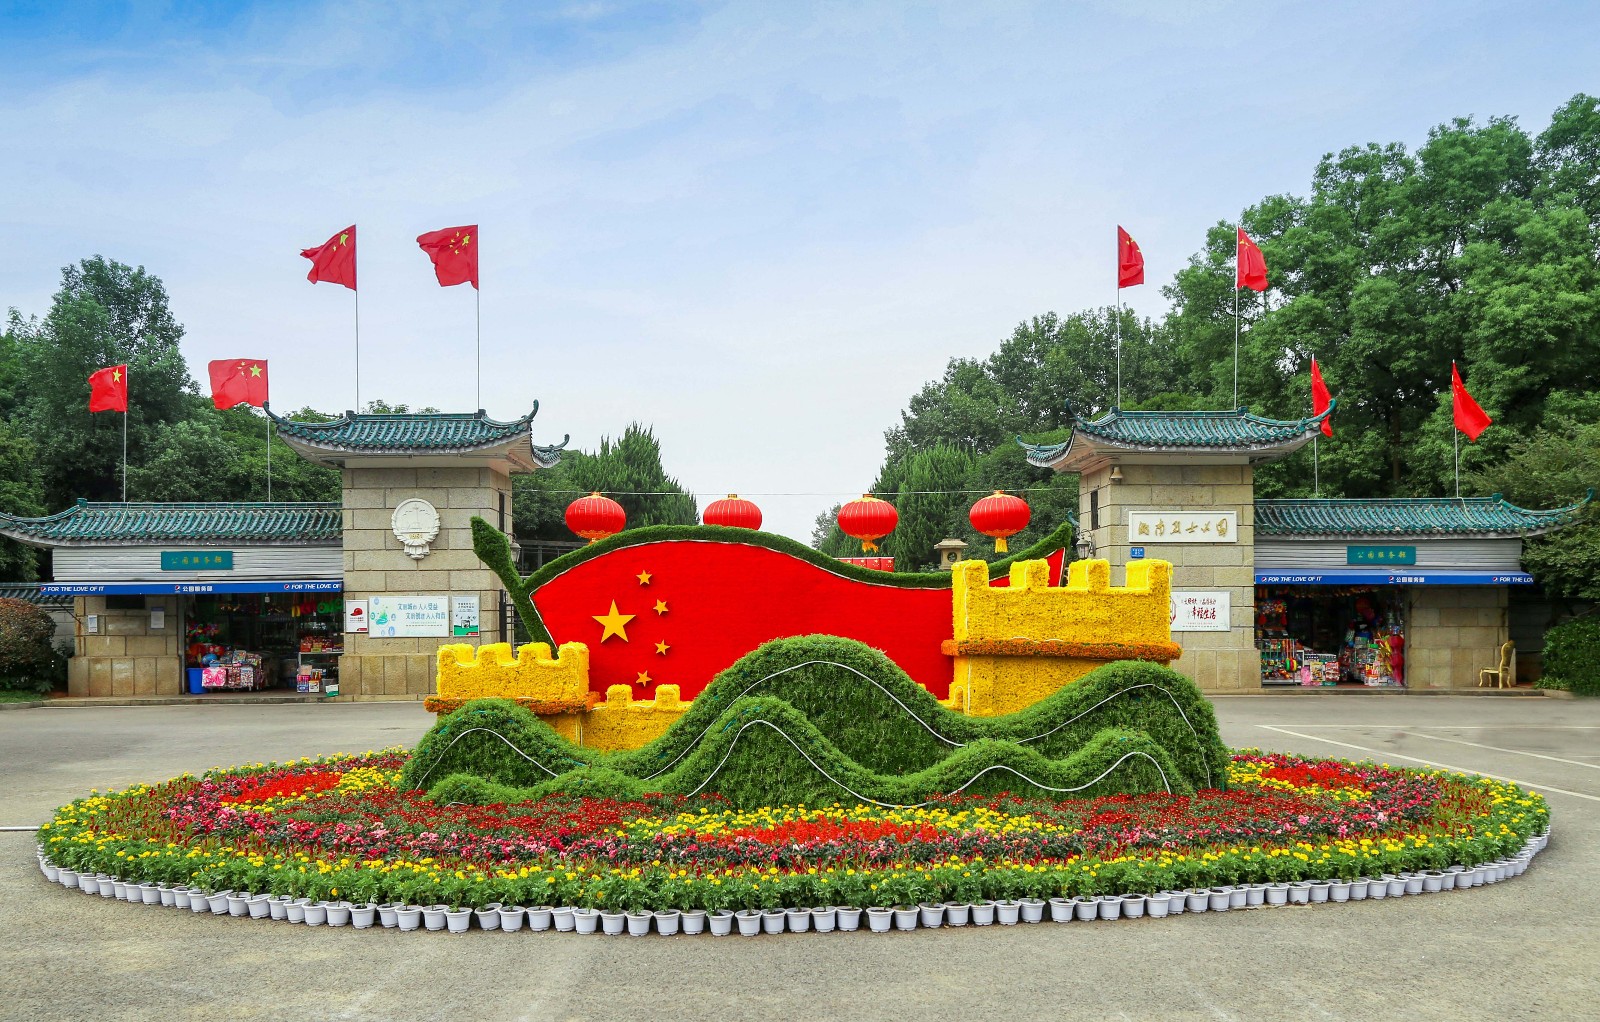 在五星红旗、大红灯笼、中国结以及鲜花装扮下，烈士公园正以最美的姿态迎接新中国成立70周年华诞。长沙晚报全媒体记者周柏平 通讯员 李炼 摄影报道



